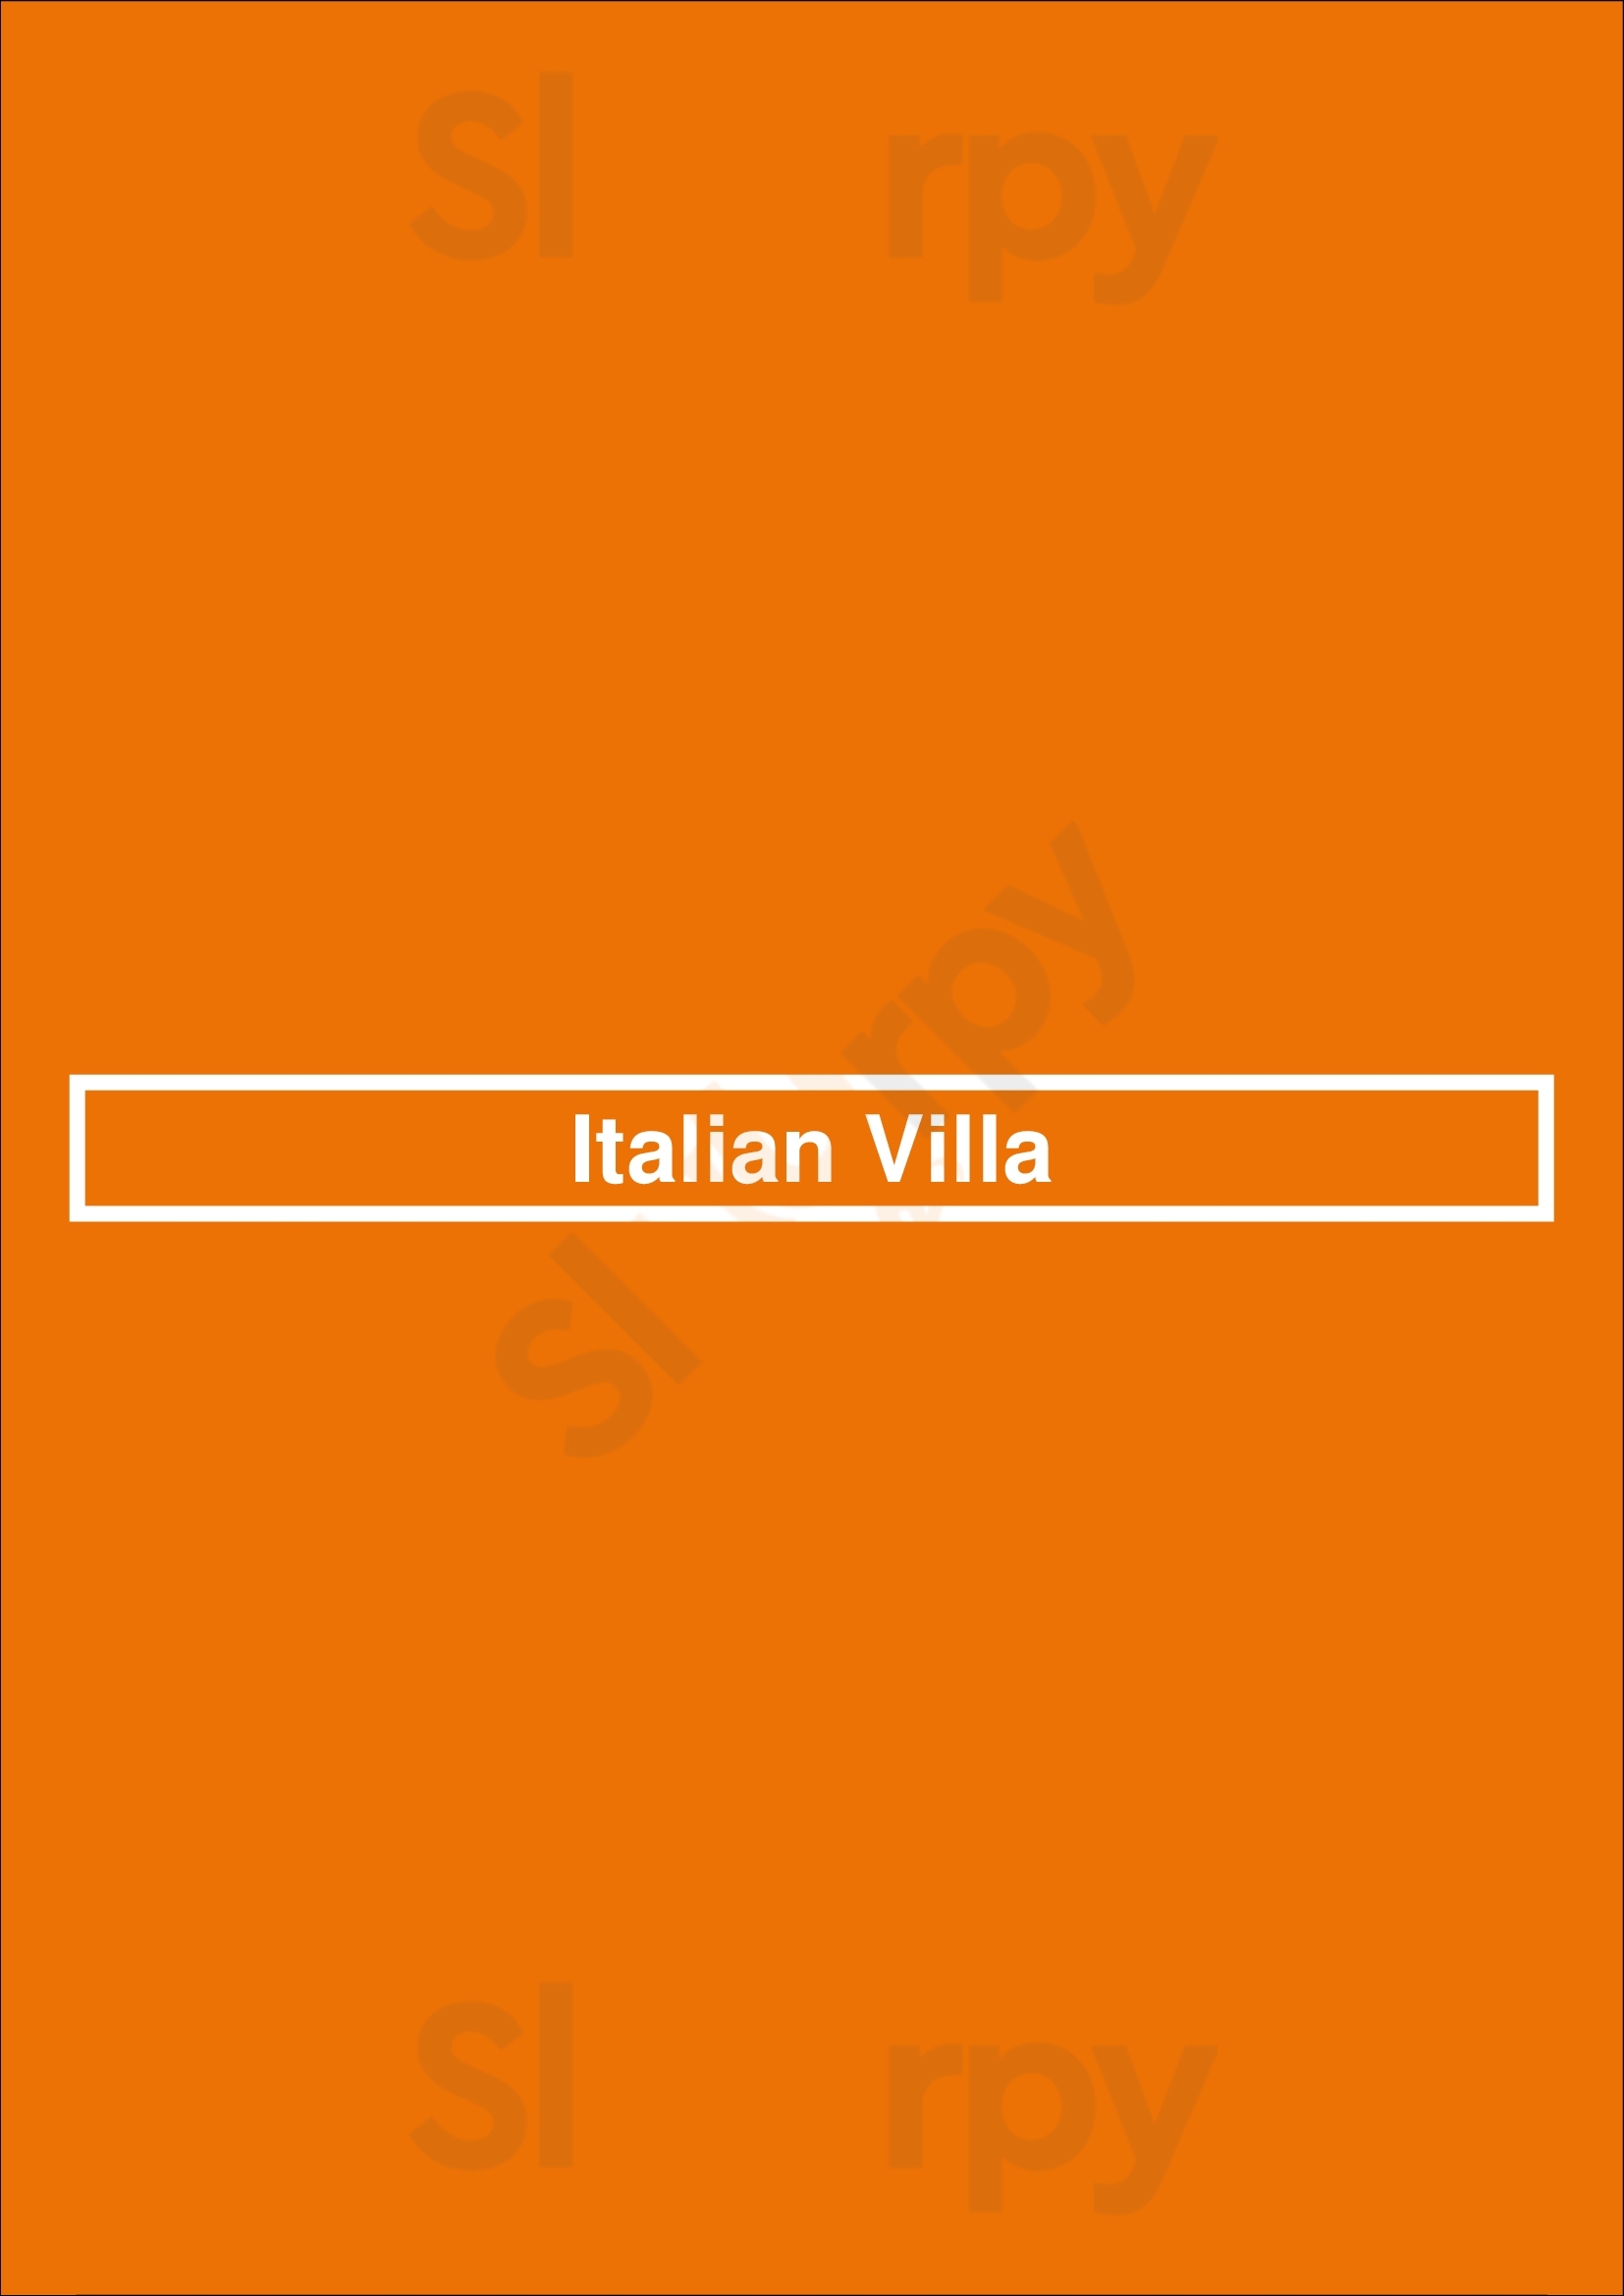 Italian Villa Albufeira Menu - 1